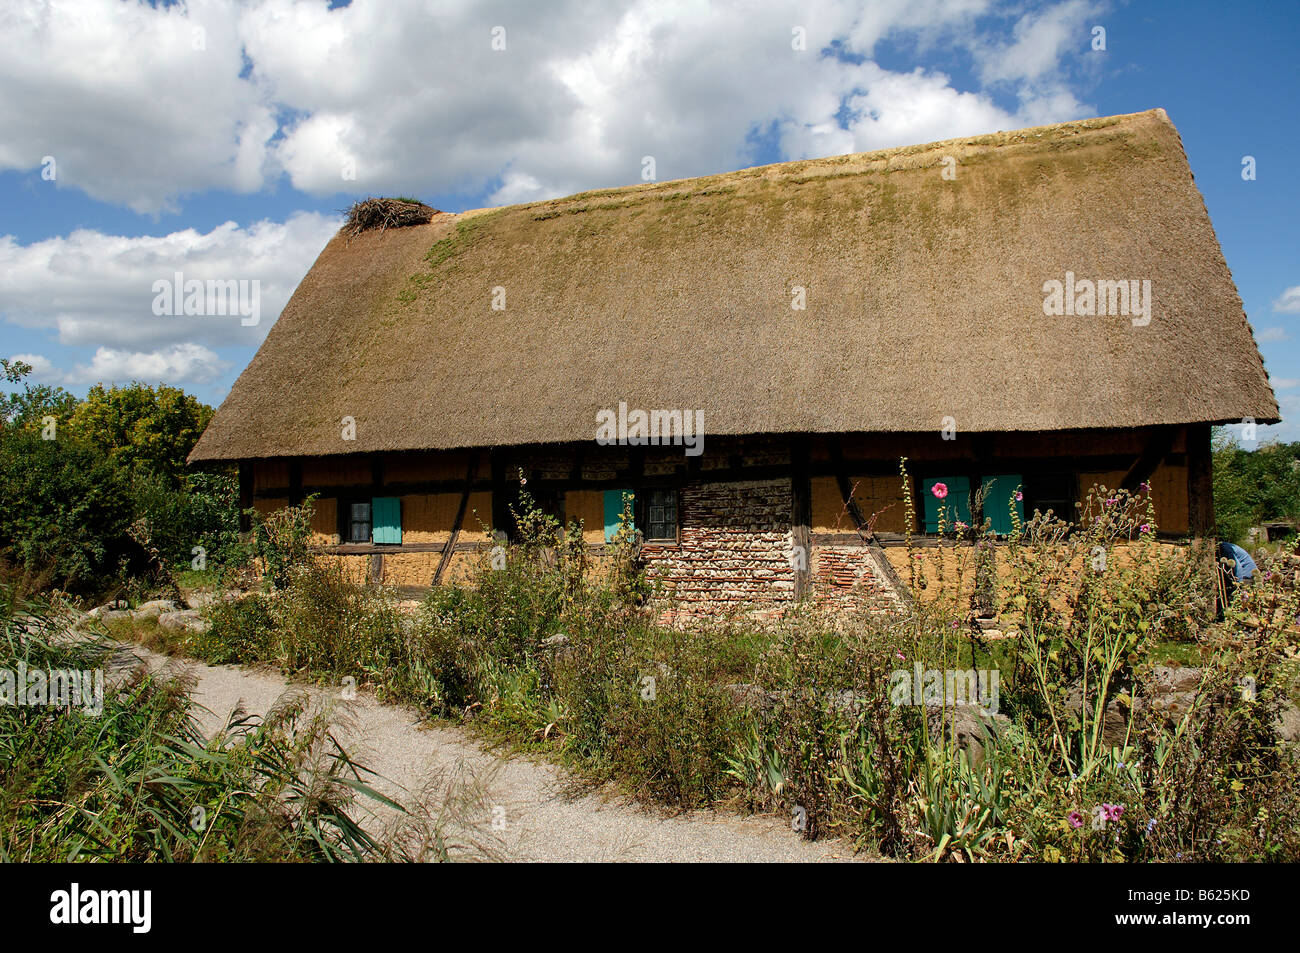 Acacia histórico con entramado de madera y barro una casa con techo de paja, 1561), eco-museo, Ungersheim, Alsacia, Francia, Europa Foto de stock